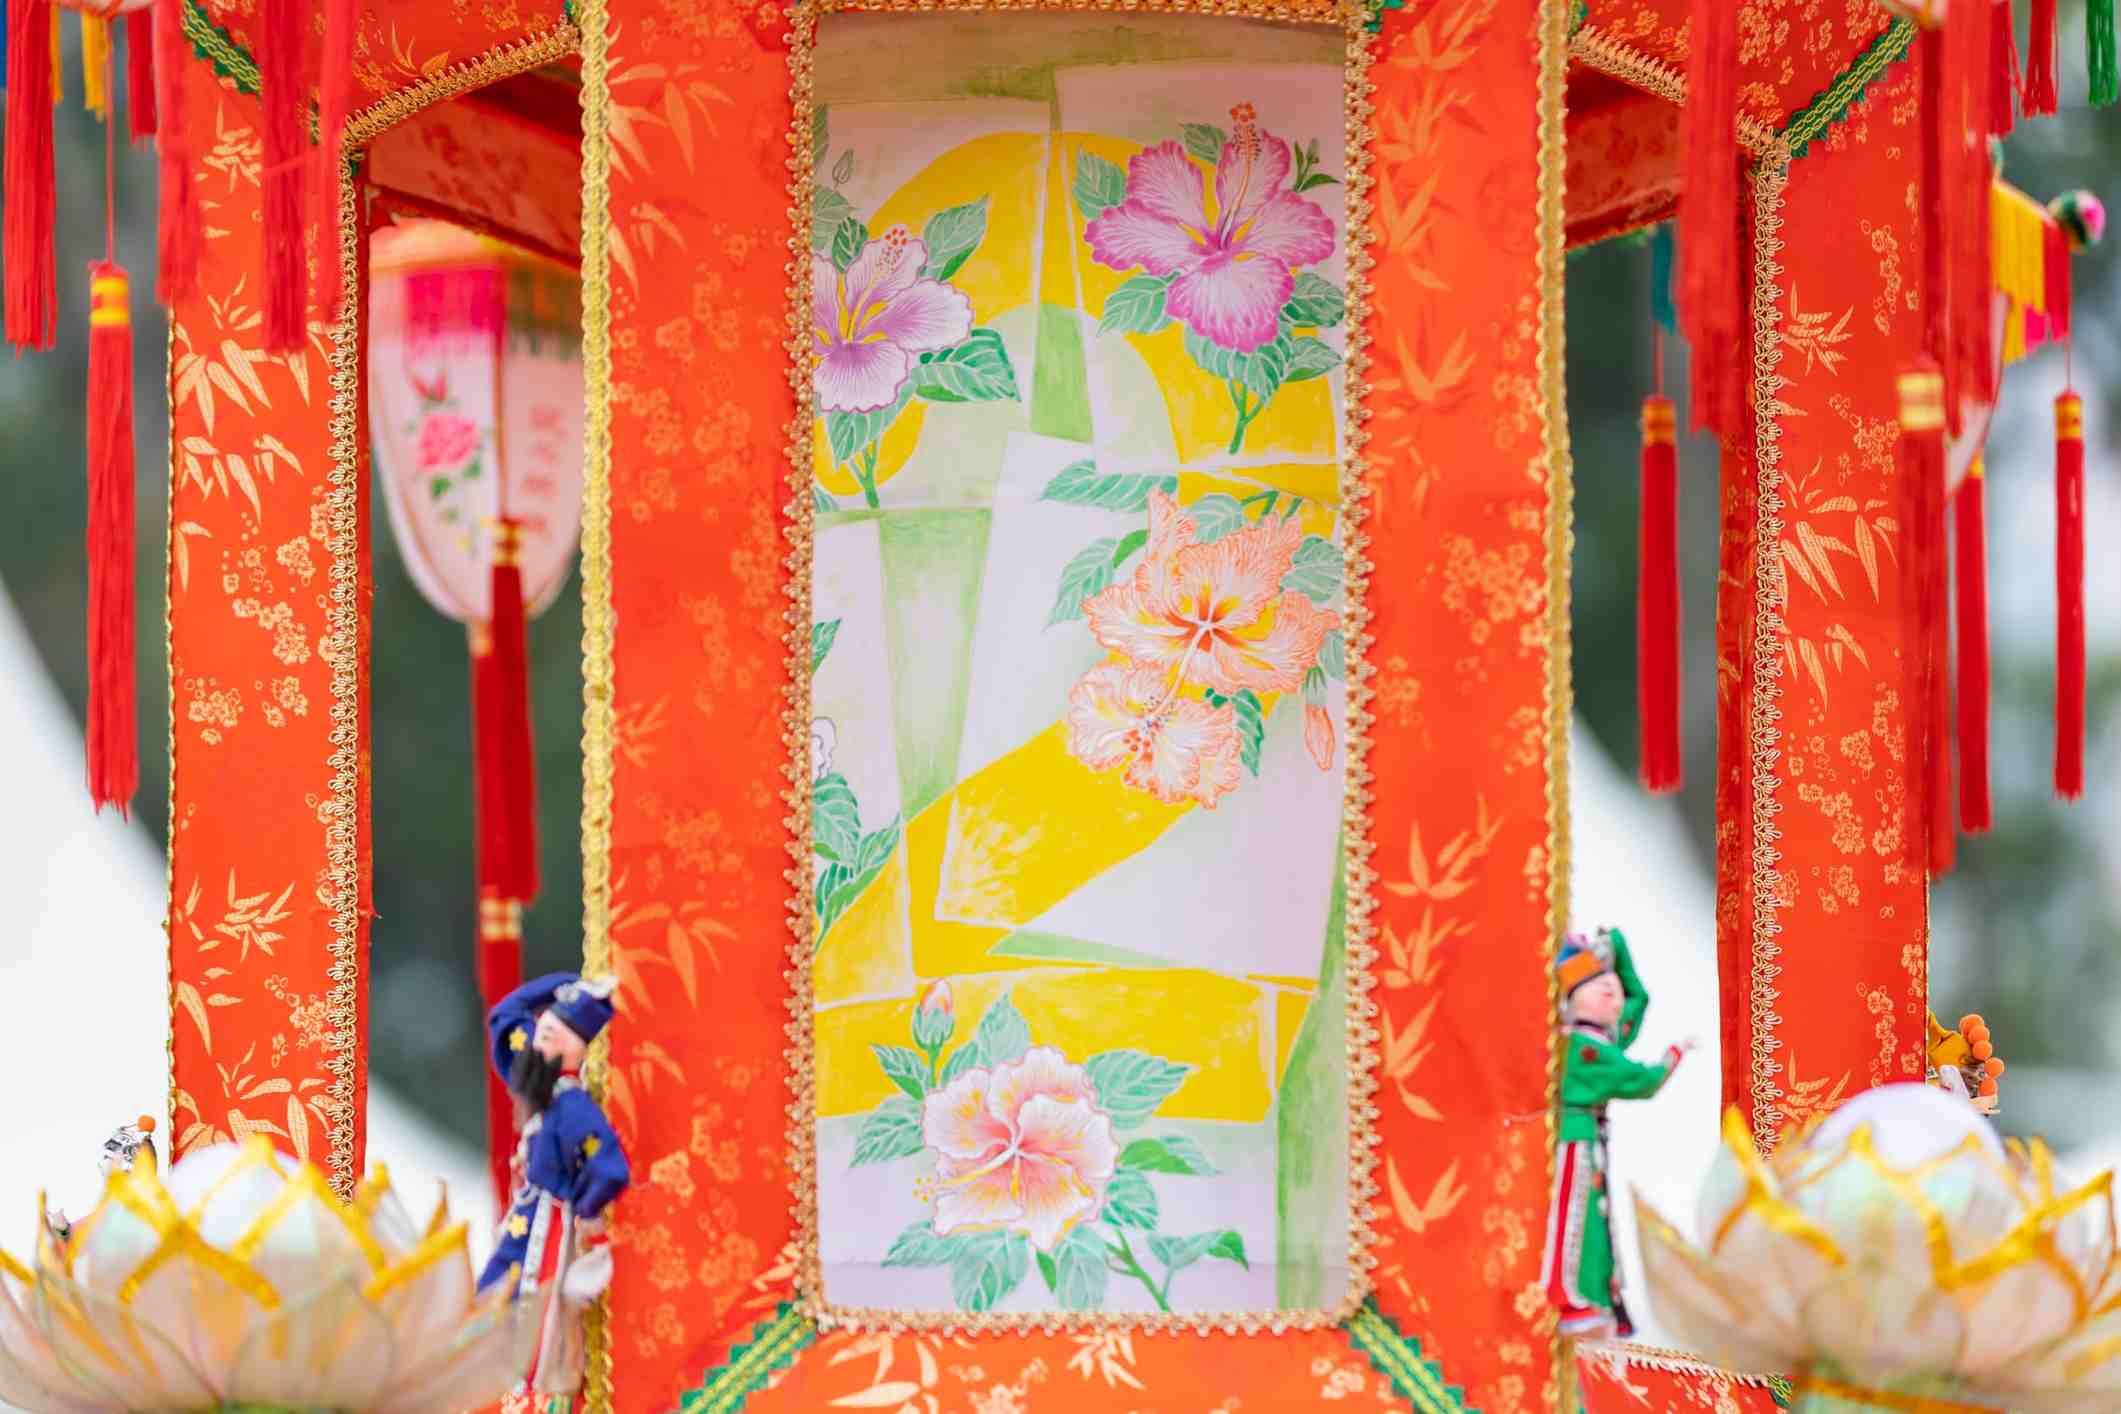 二零一九年香港花卉展覽：「香港非物質文化遺產 ─ 傳統紮作技藝展示」